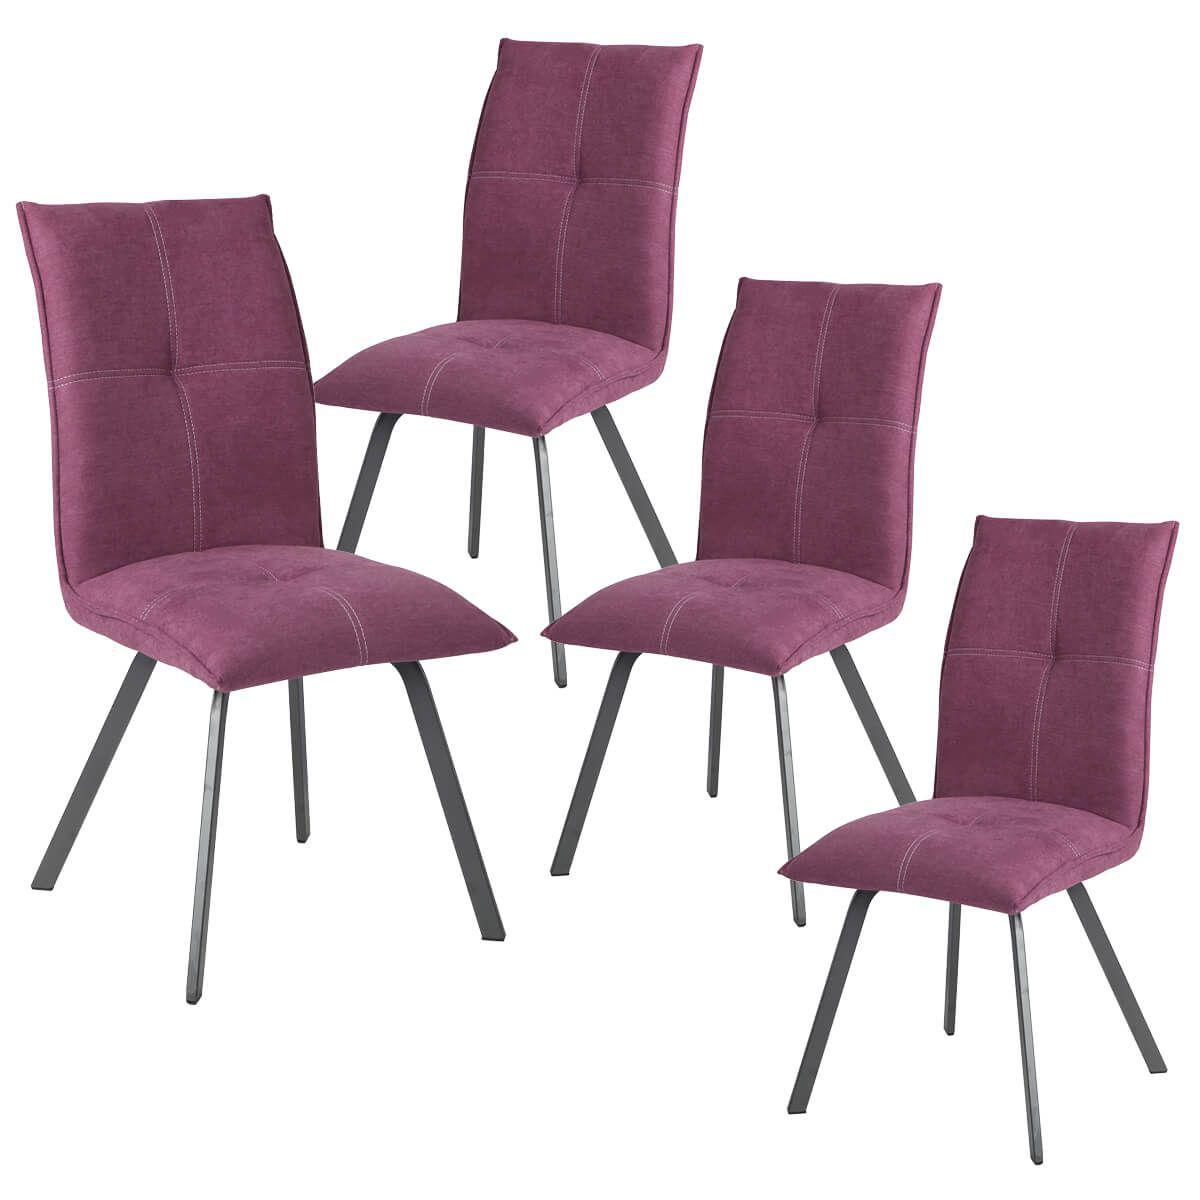 Altobuy - BISPO - Lot de 4 Chaises Tissu Coloris Violet - Chaises